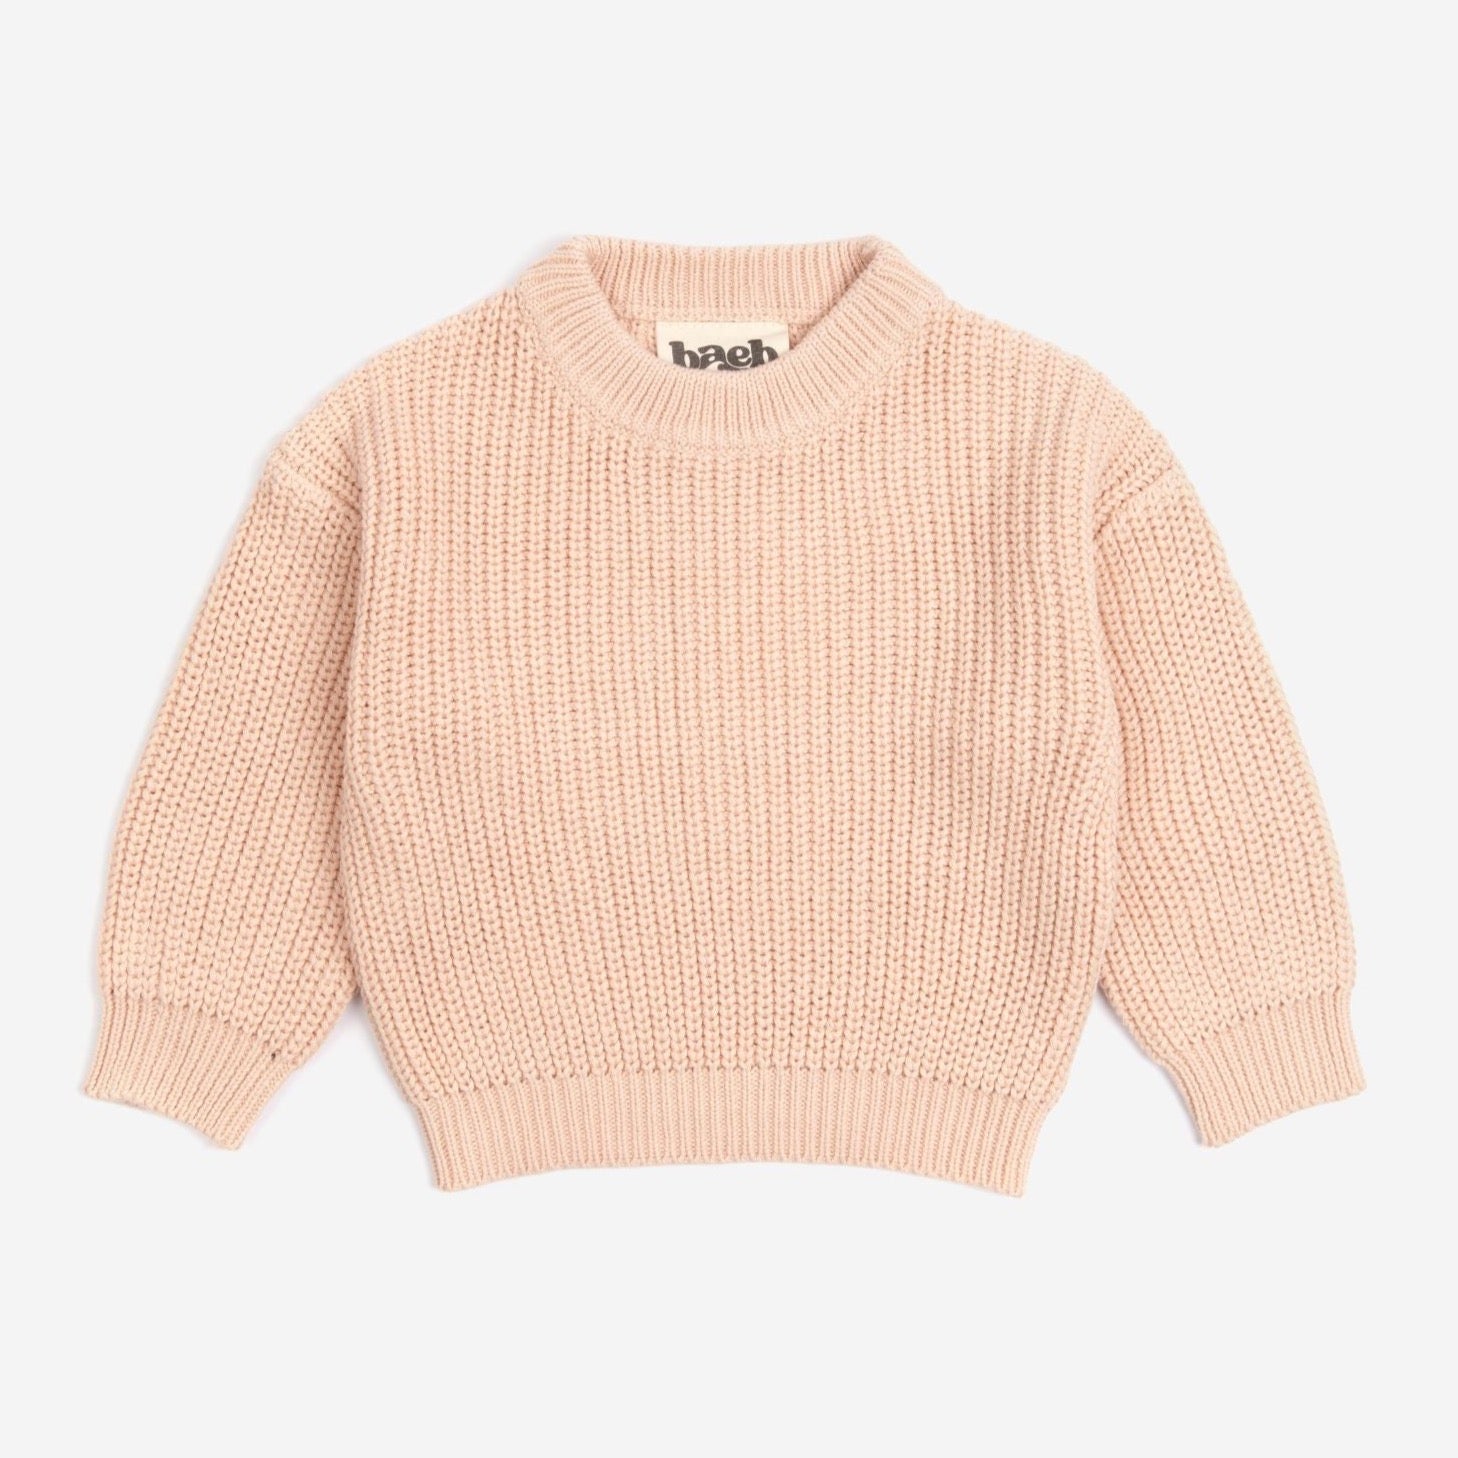 Organic Basic Knit Oversized Sweater - Cotton Candy